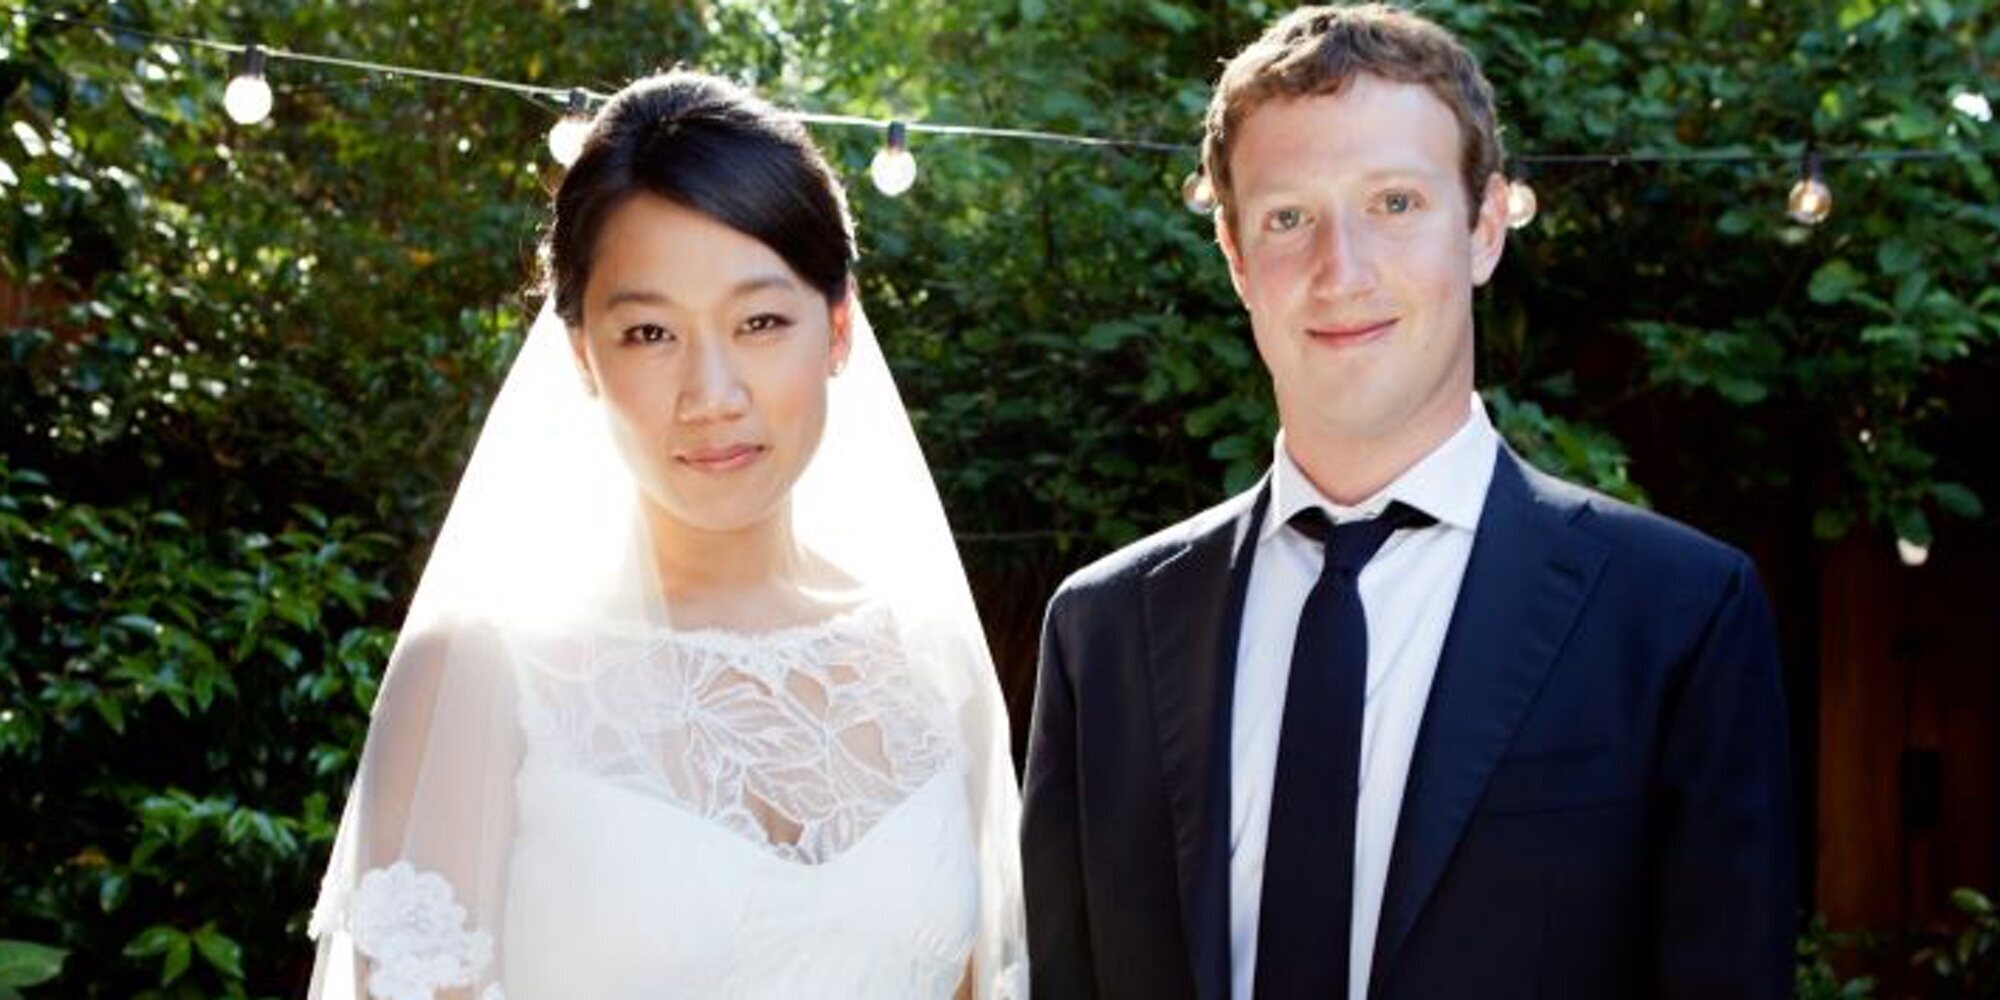 Mark Zuckerberg y Priscilla Chan, demandados por permitir comentarios racistas y homófobos entre sus empleados